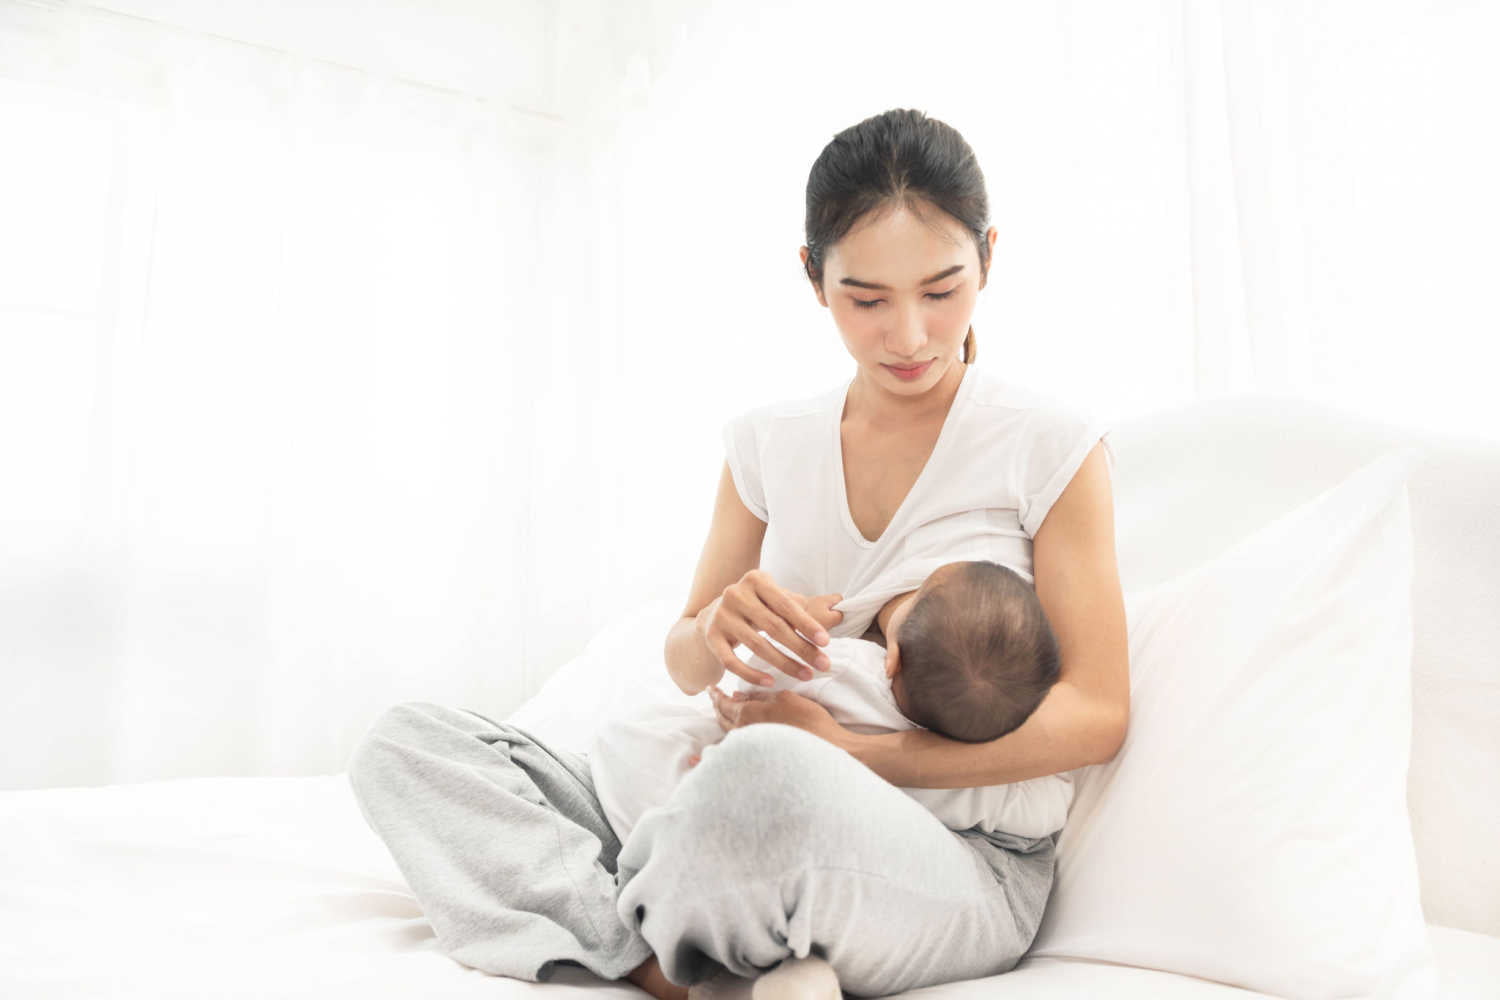 mom breastfeeding a sick baby